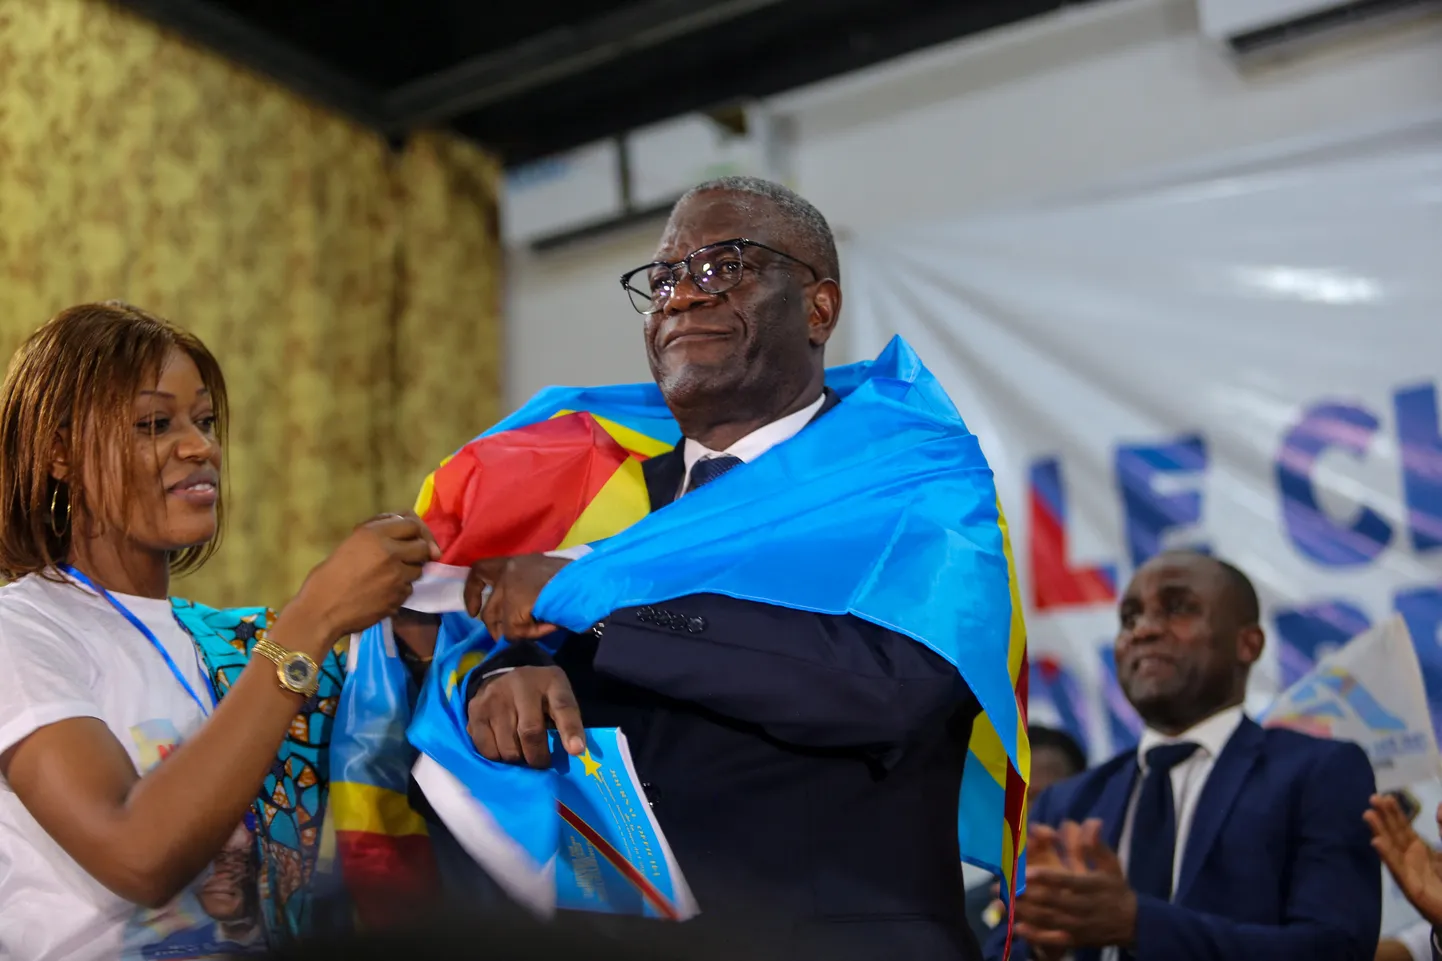 Kongo Demokraatliku Vabariigi günekoloog ja inimõiguslane Denis Mukwege, kes pälvis 2018. aastal Nobeli rahupreemia oma pea kaks aastakümmet kestnud võitluse eest seksuaalvägivalla vastu, teatas oktoobri alguses kavatsusest kandideerida presidendiks.